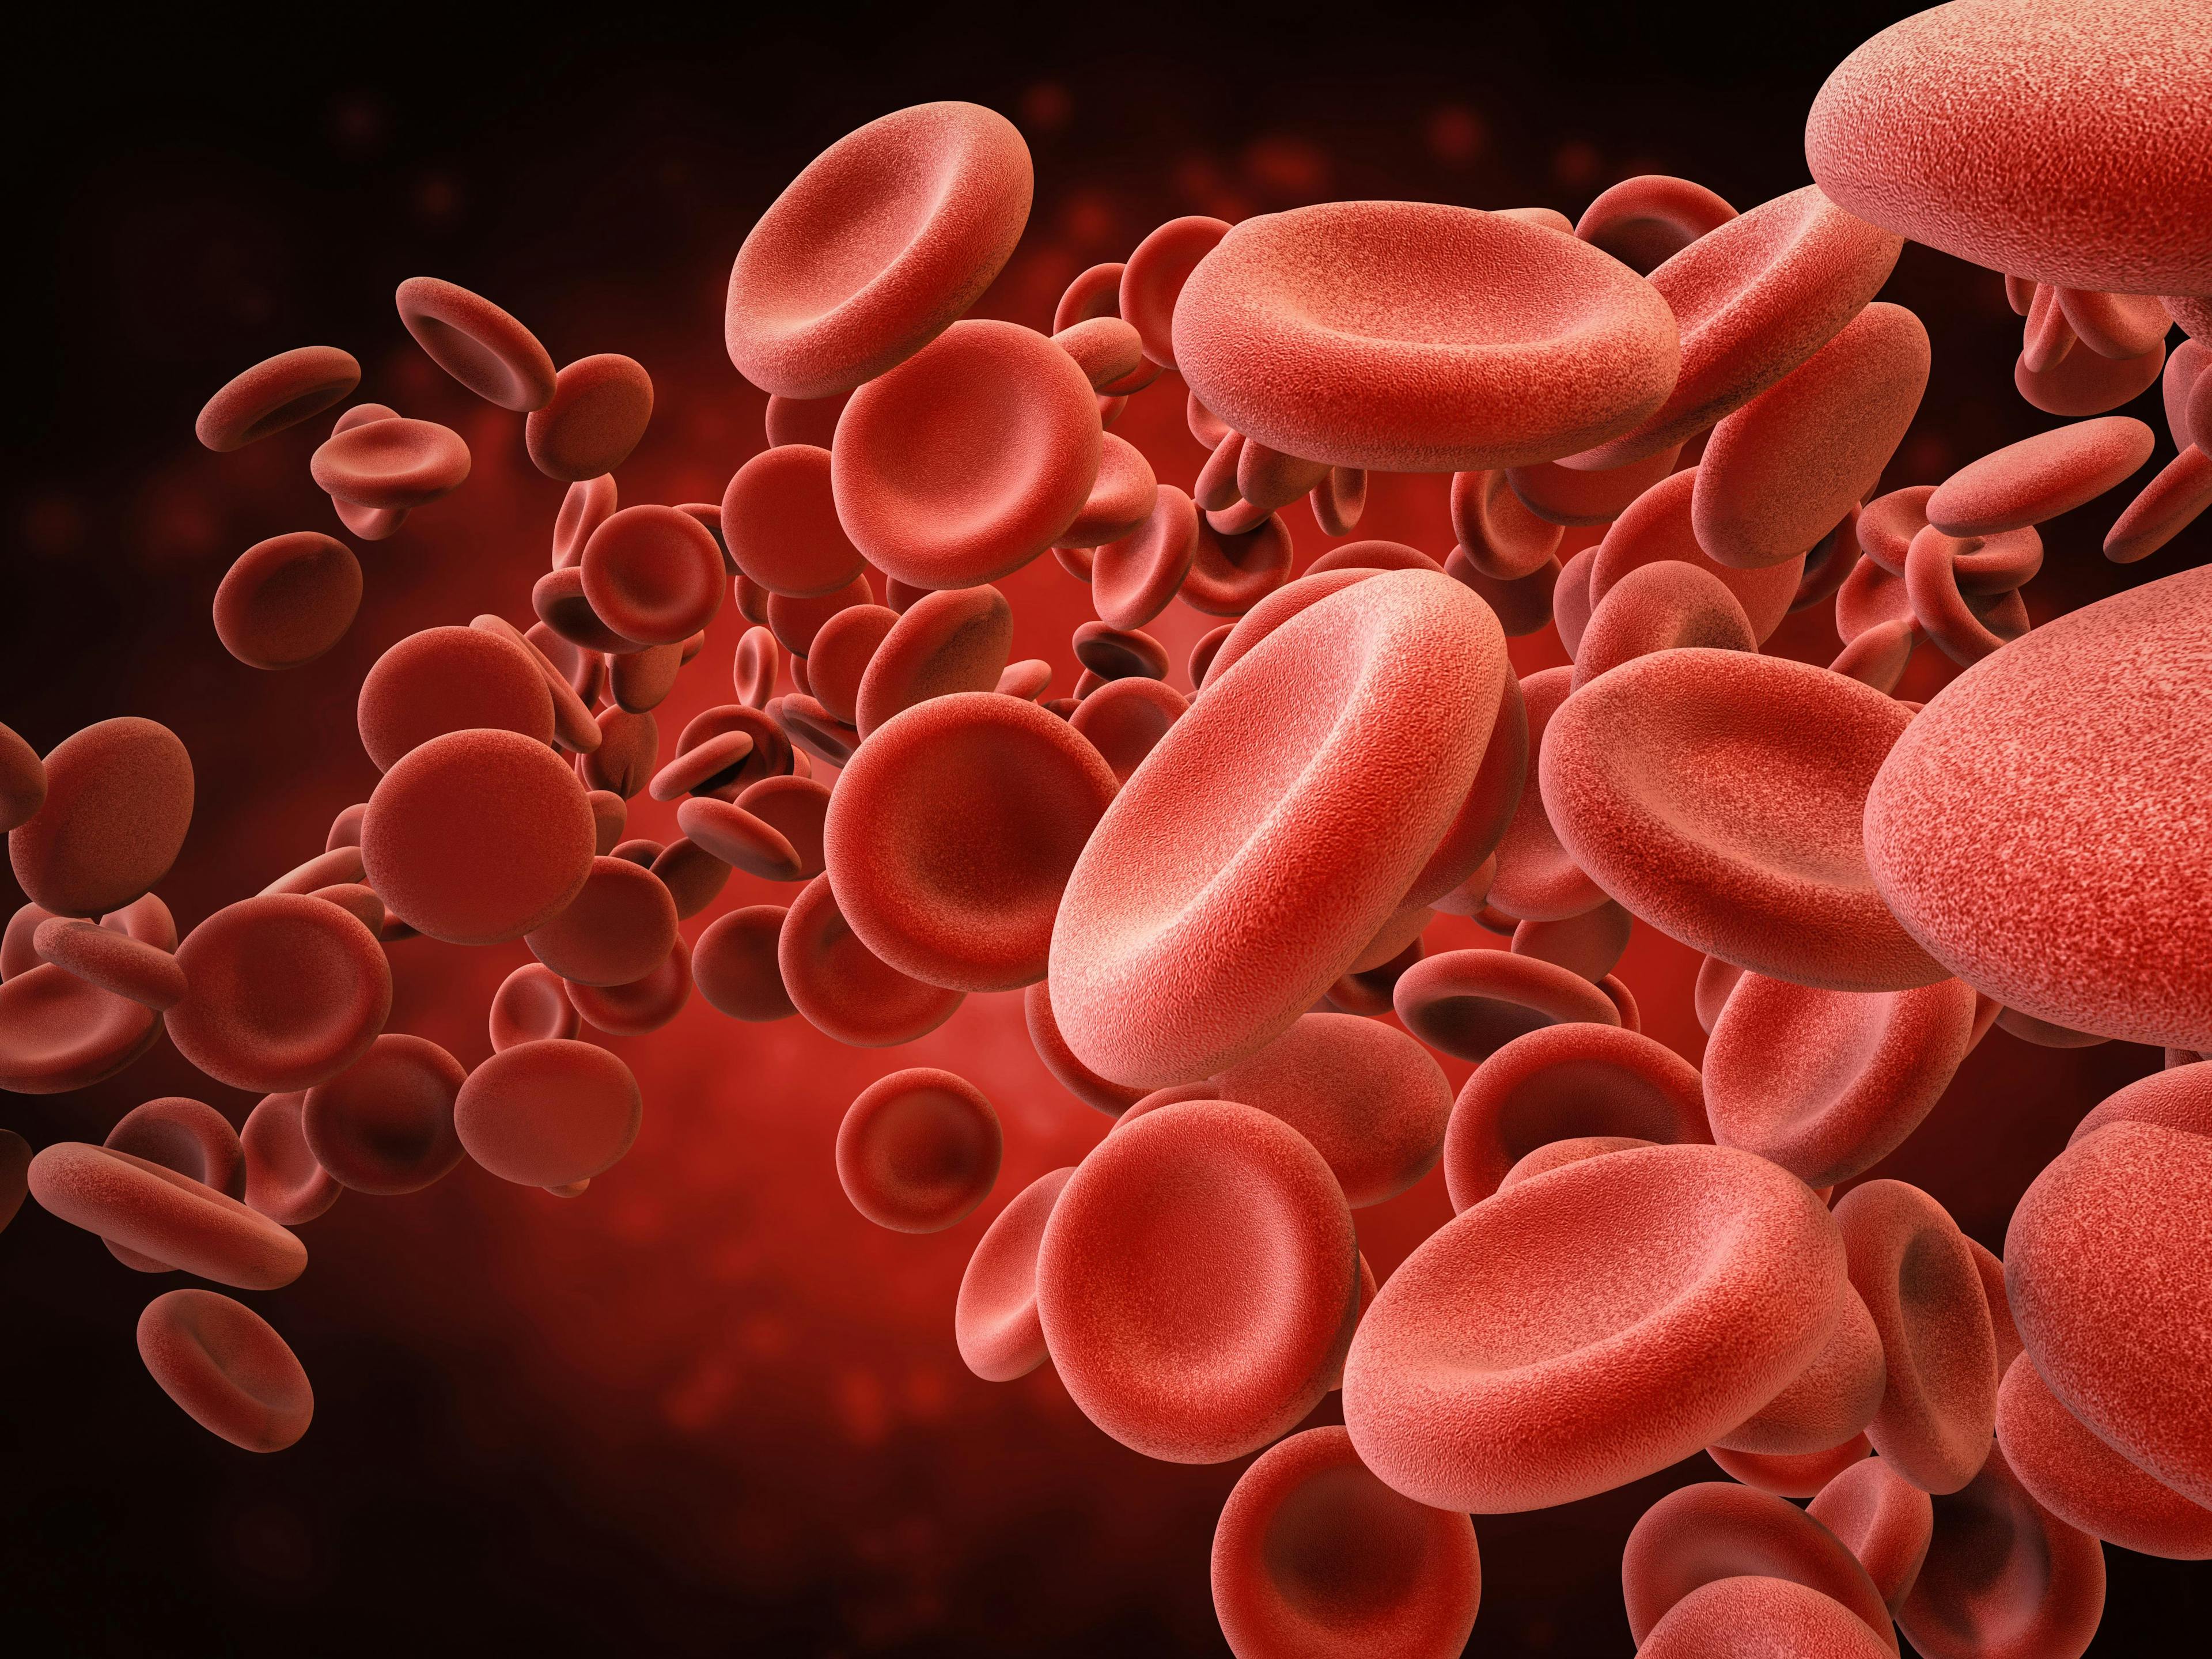 Digital illustration of red blood cells